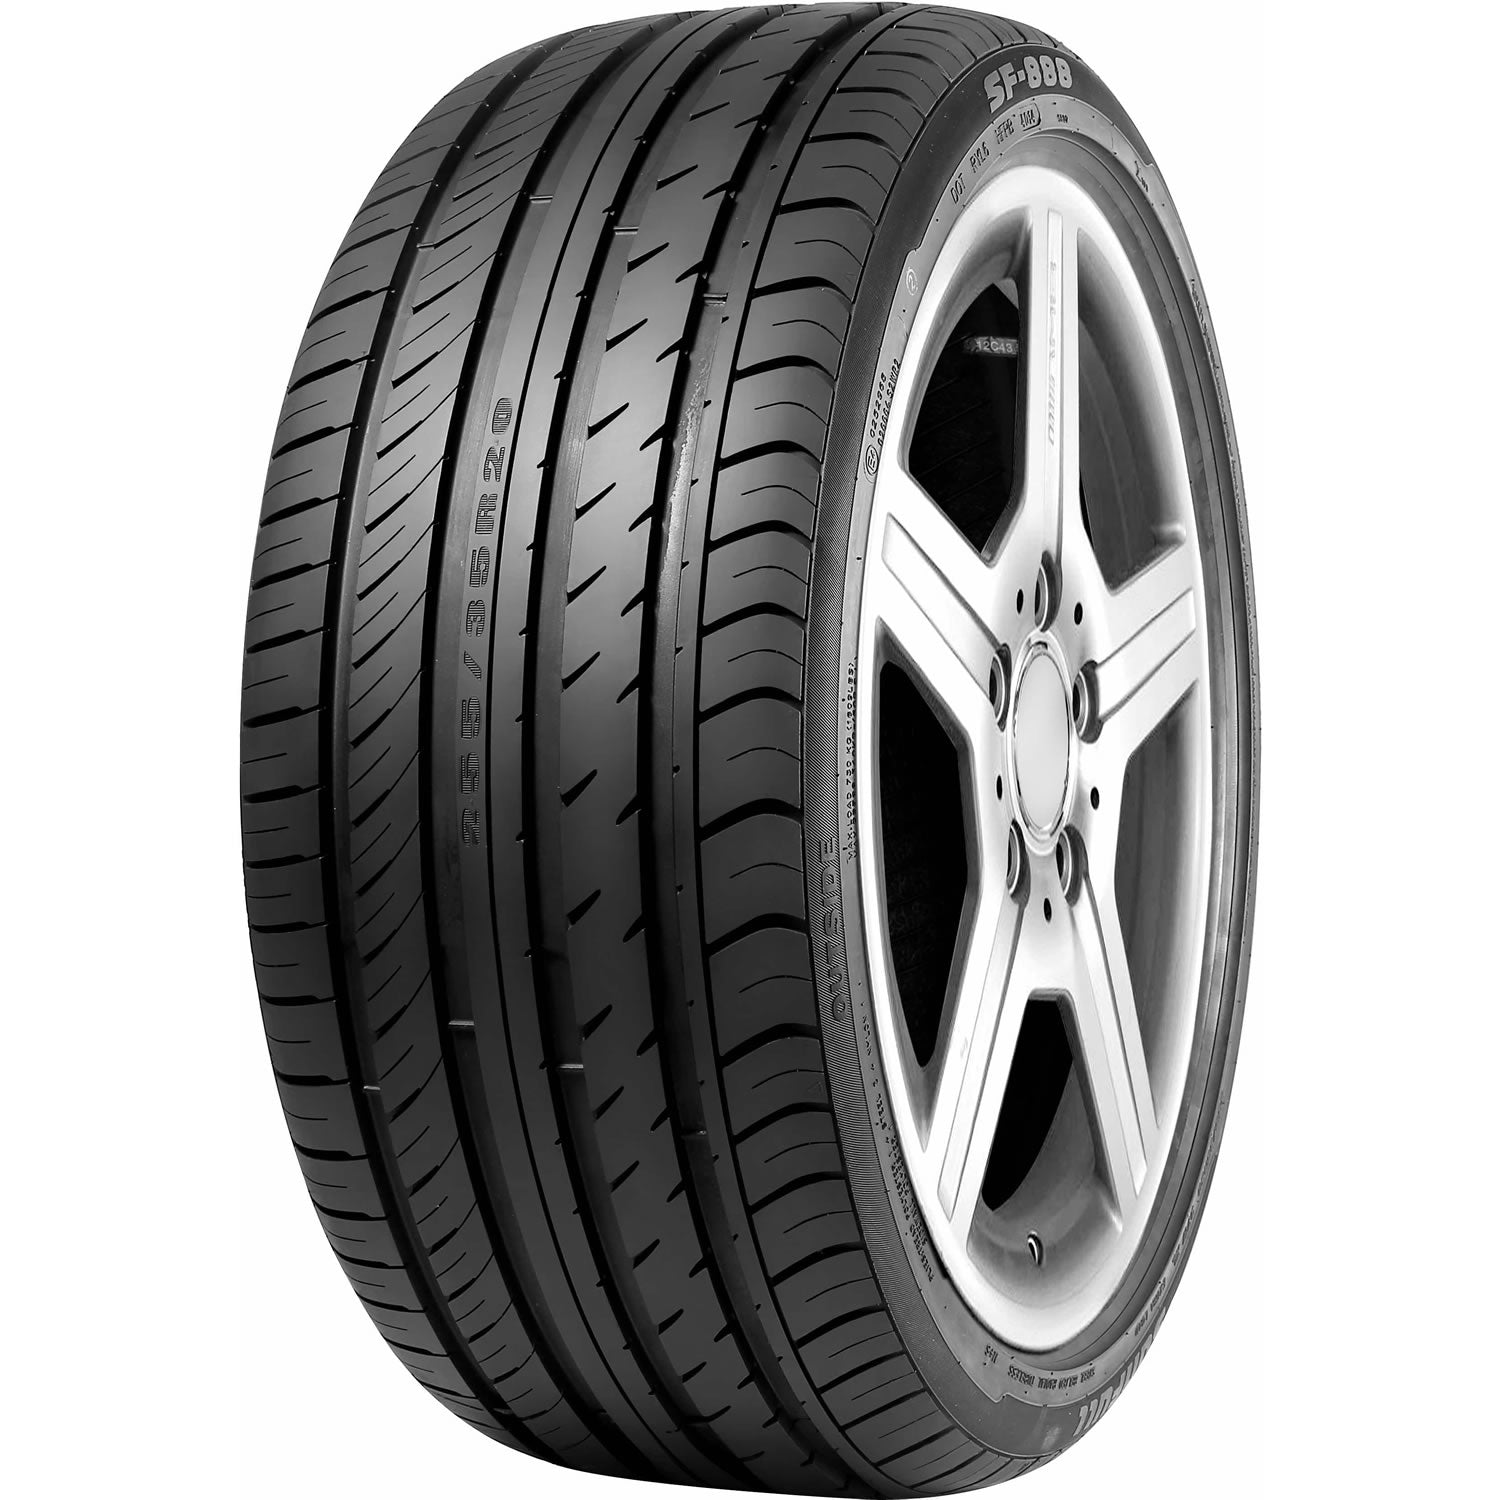 SUNFULL SF-888 235/40R18 XL (25.4X9.5R 18) Tires